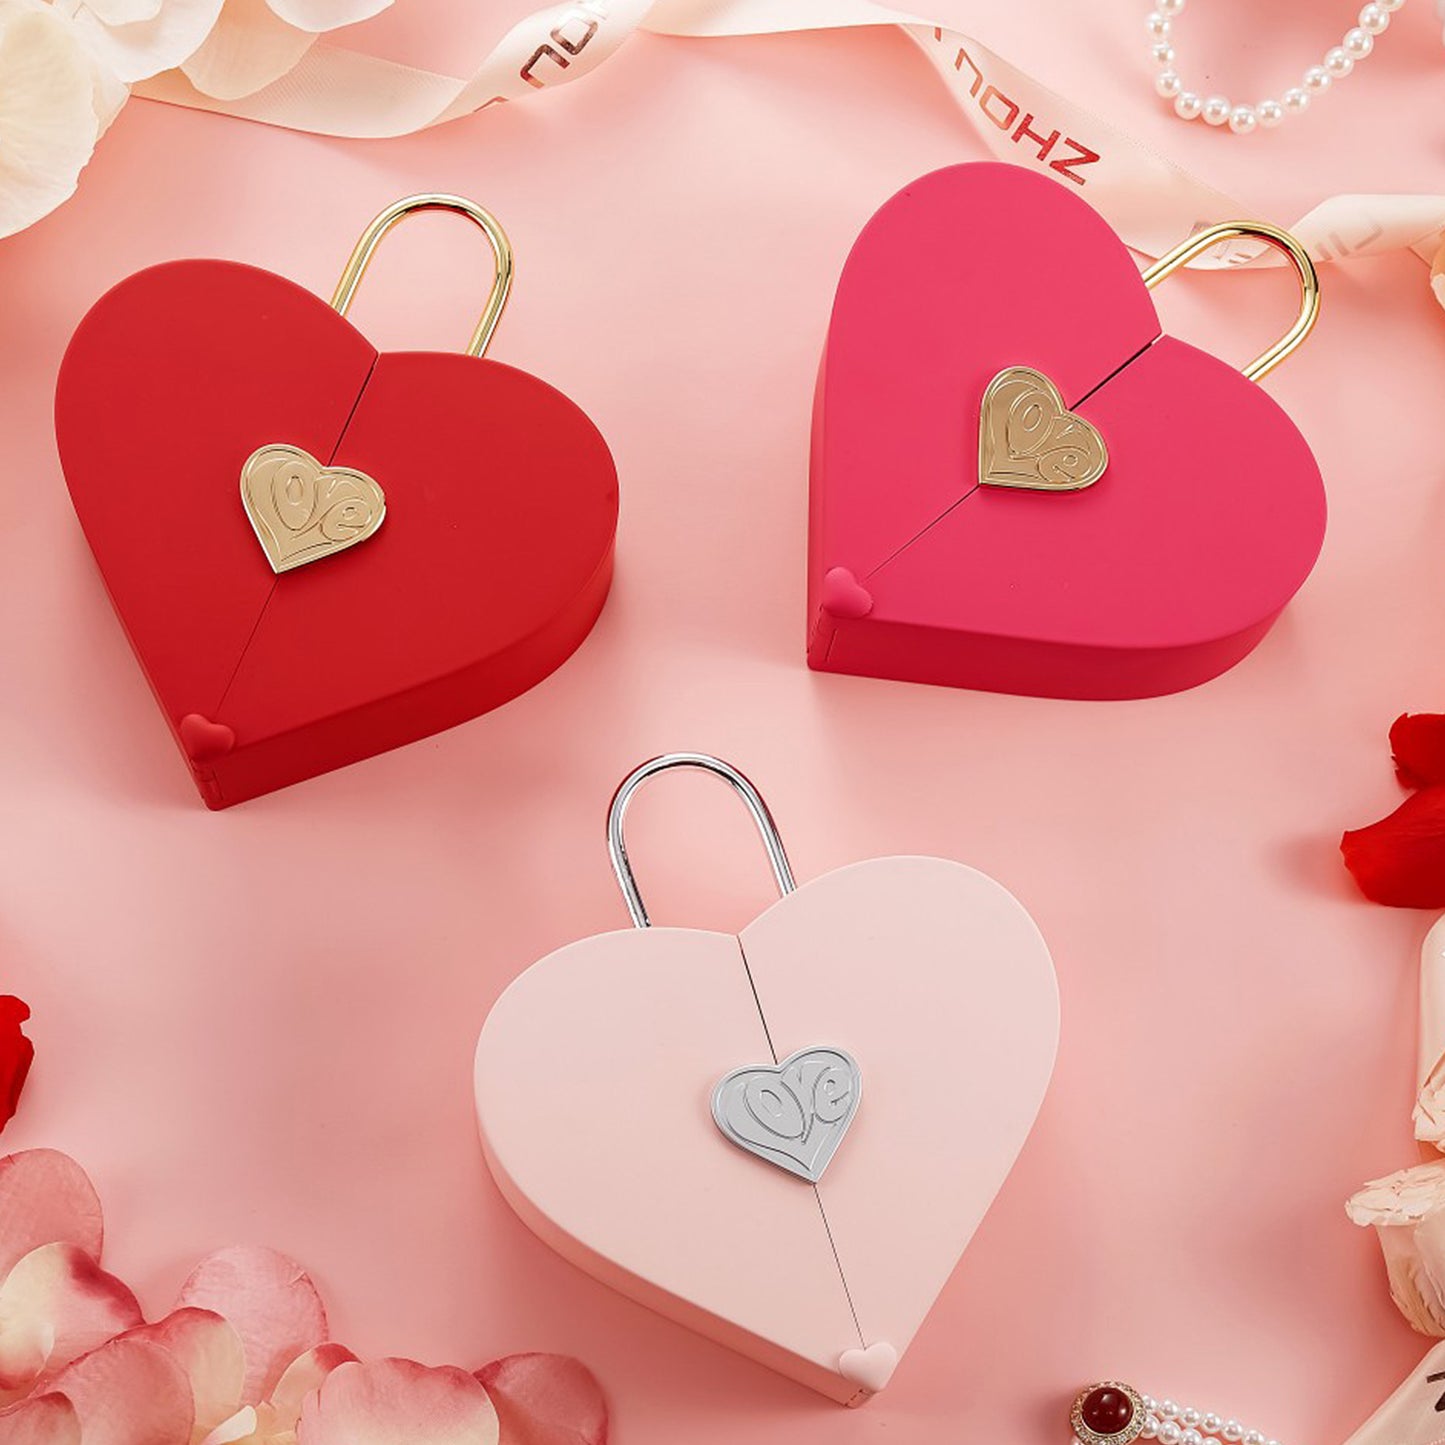 Süße herzförmige Schmuckschatulle mit Tasche, perfek für Valentinstag - Arabisco